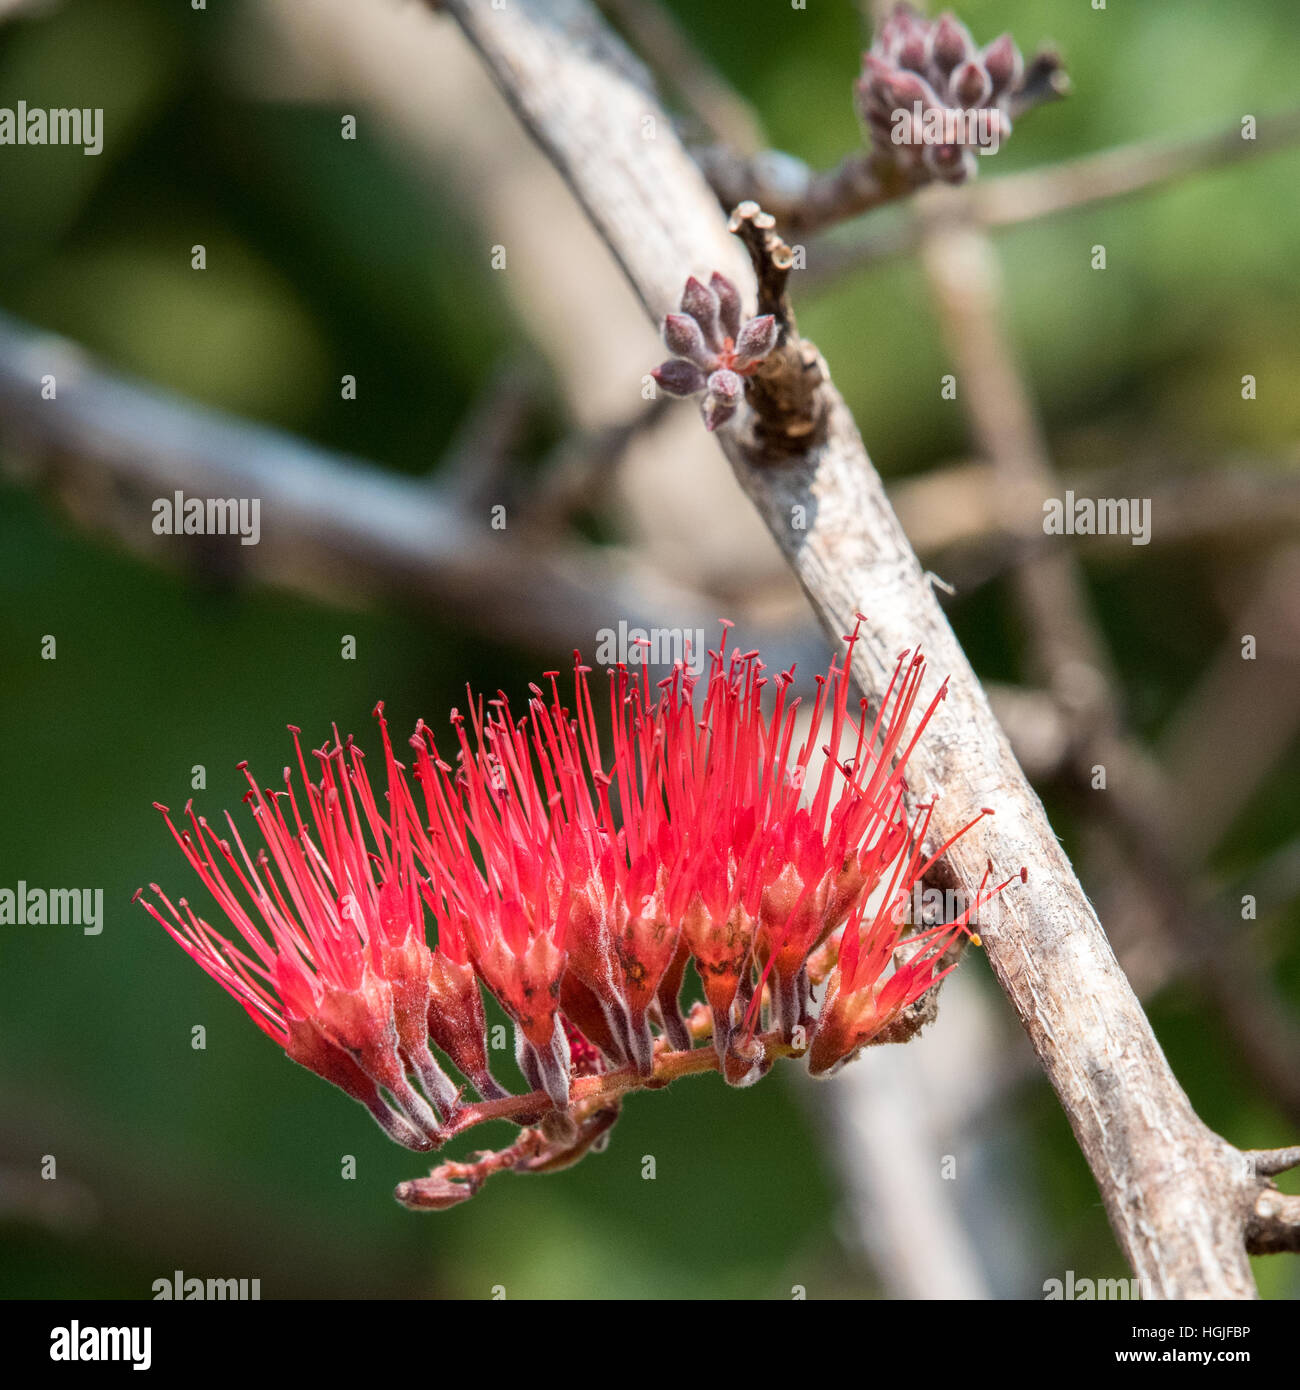 Toothbrush tree (Salvadora persica) Stock Photo